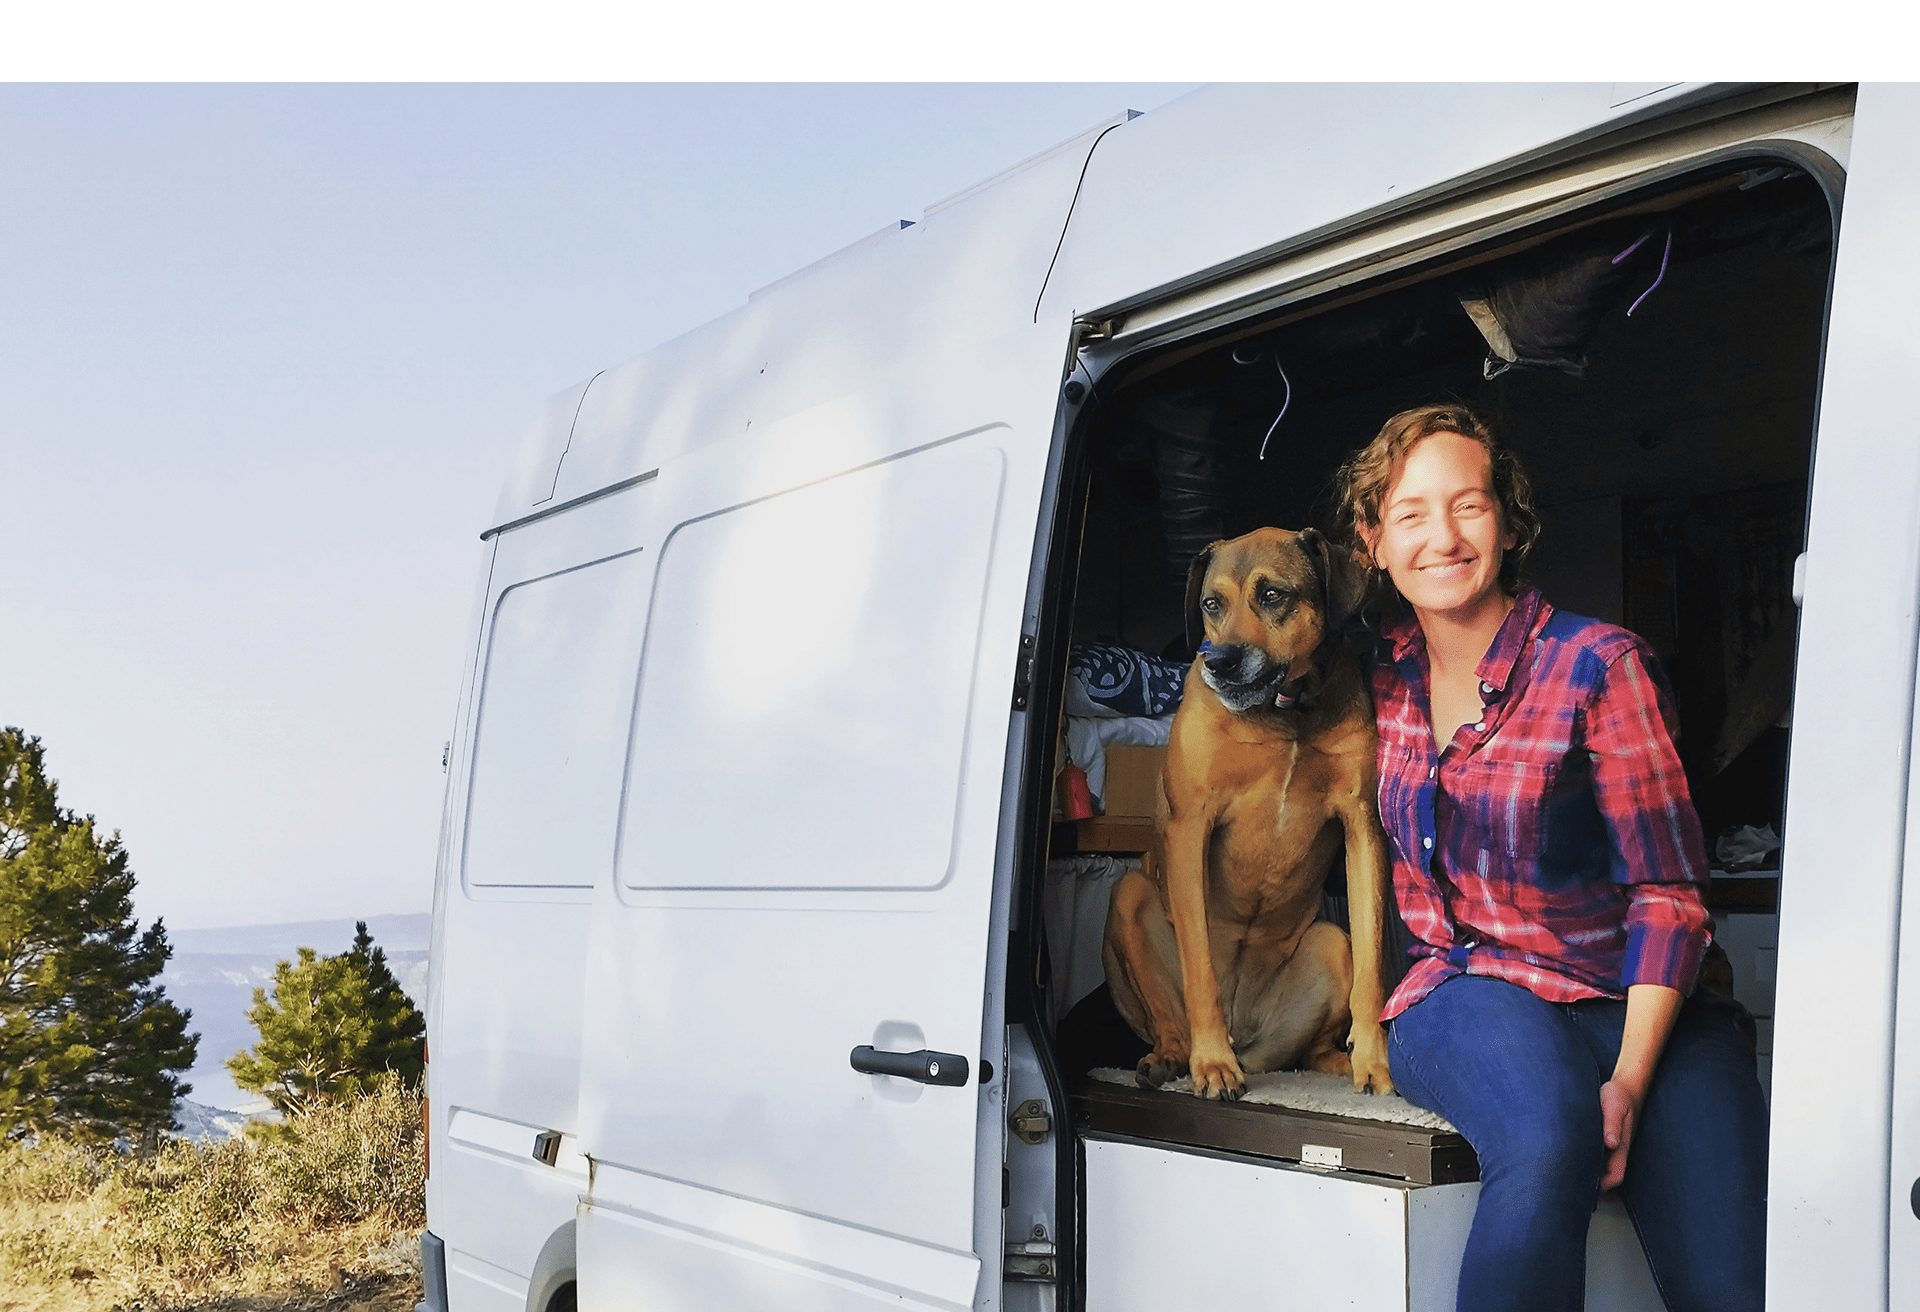 Jenny and her dog Dakota in the van.